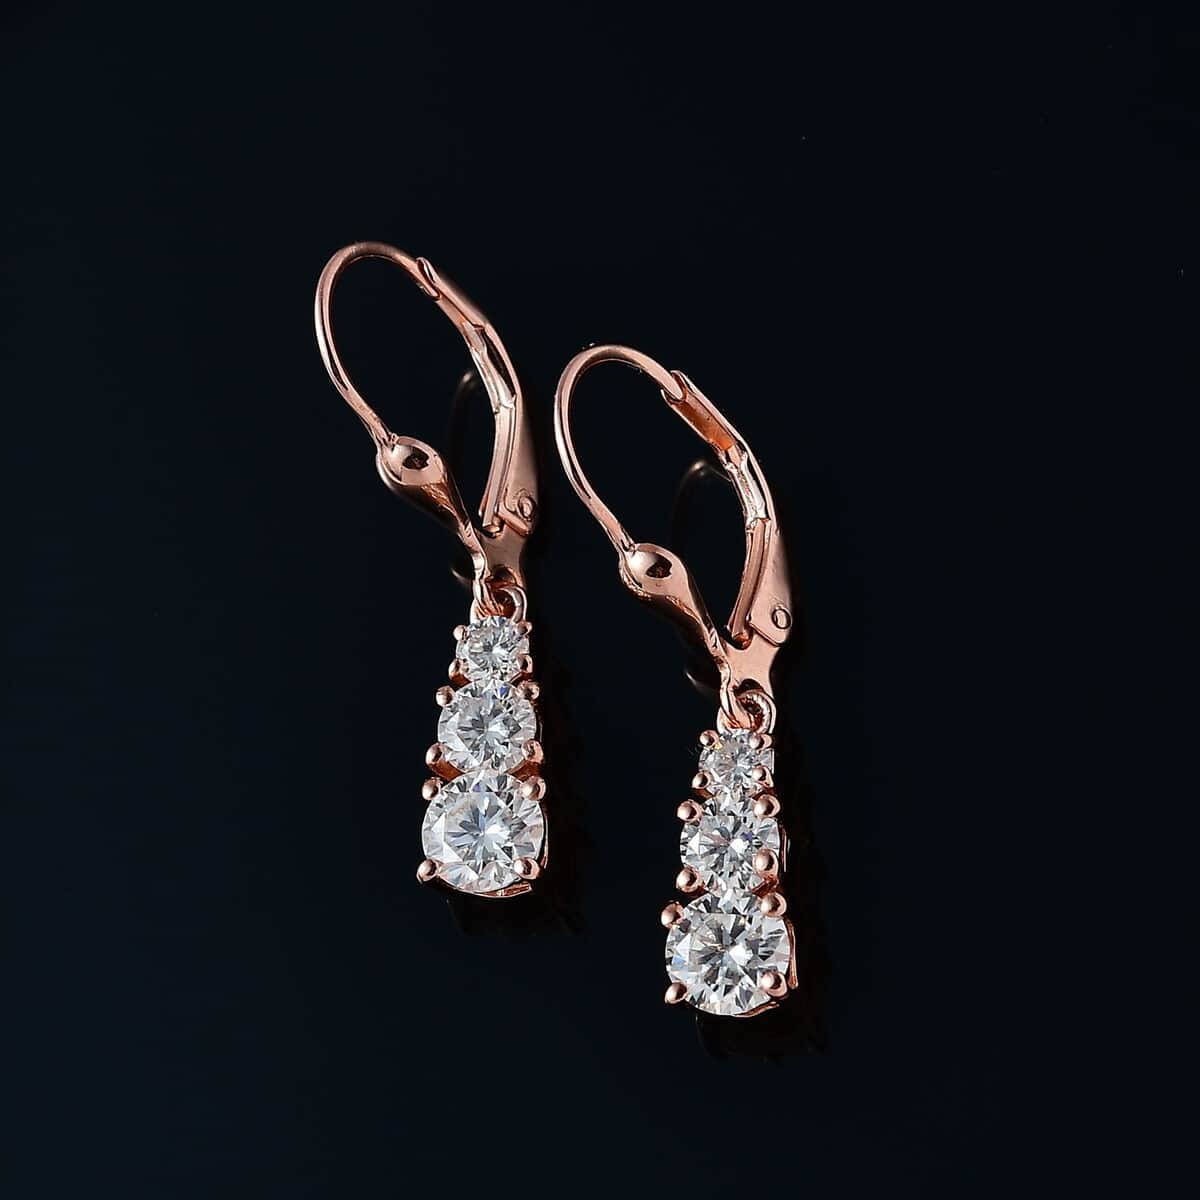 Buy Moissanite Earrings in Vermeil Rose Gold Over Sterling Silver 1.50 ...